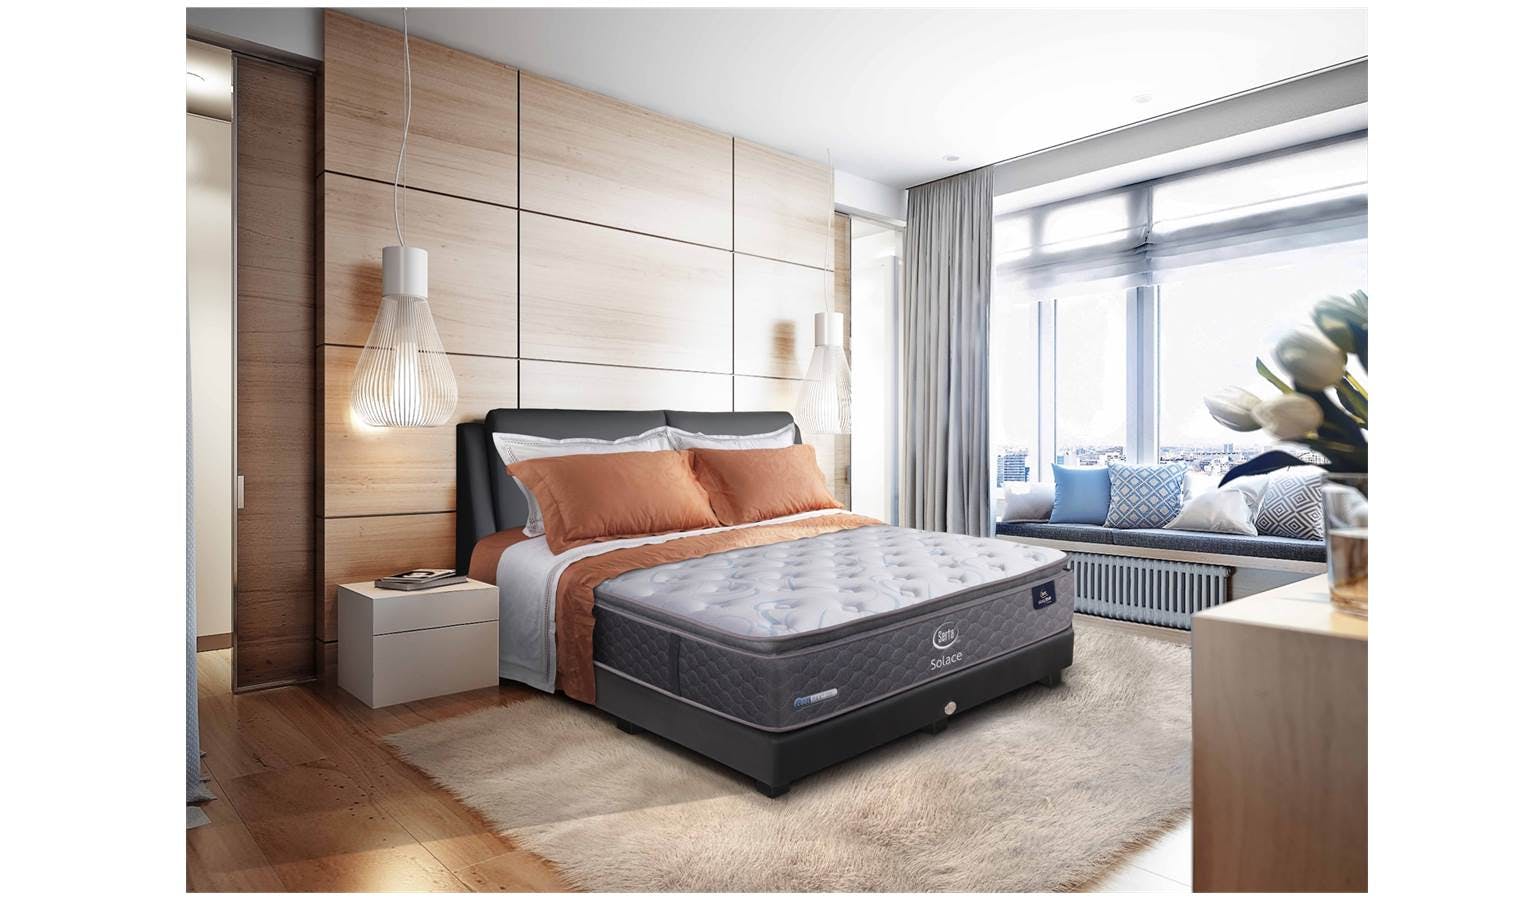 serta sleeptrue euro top coil mattress review